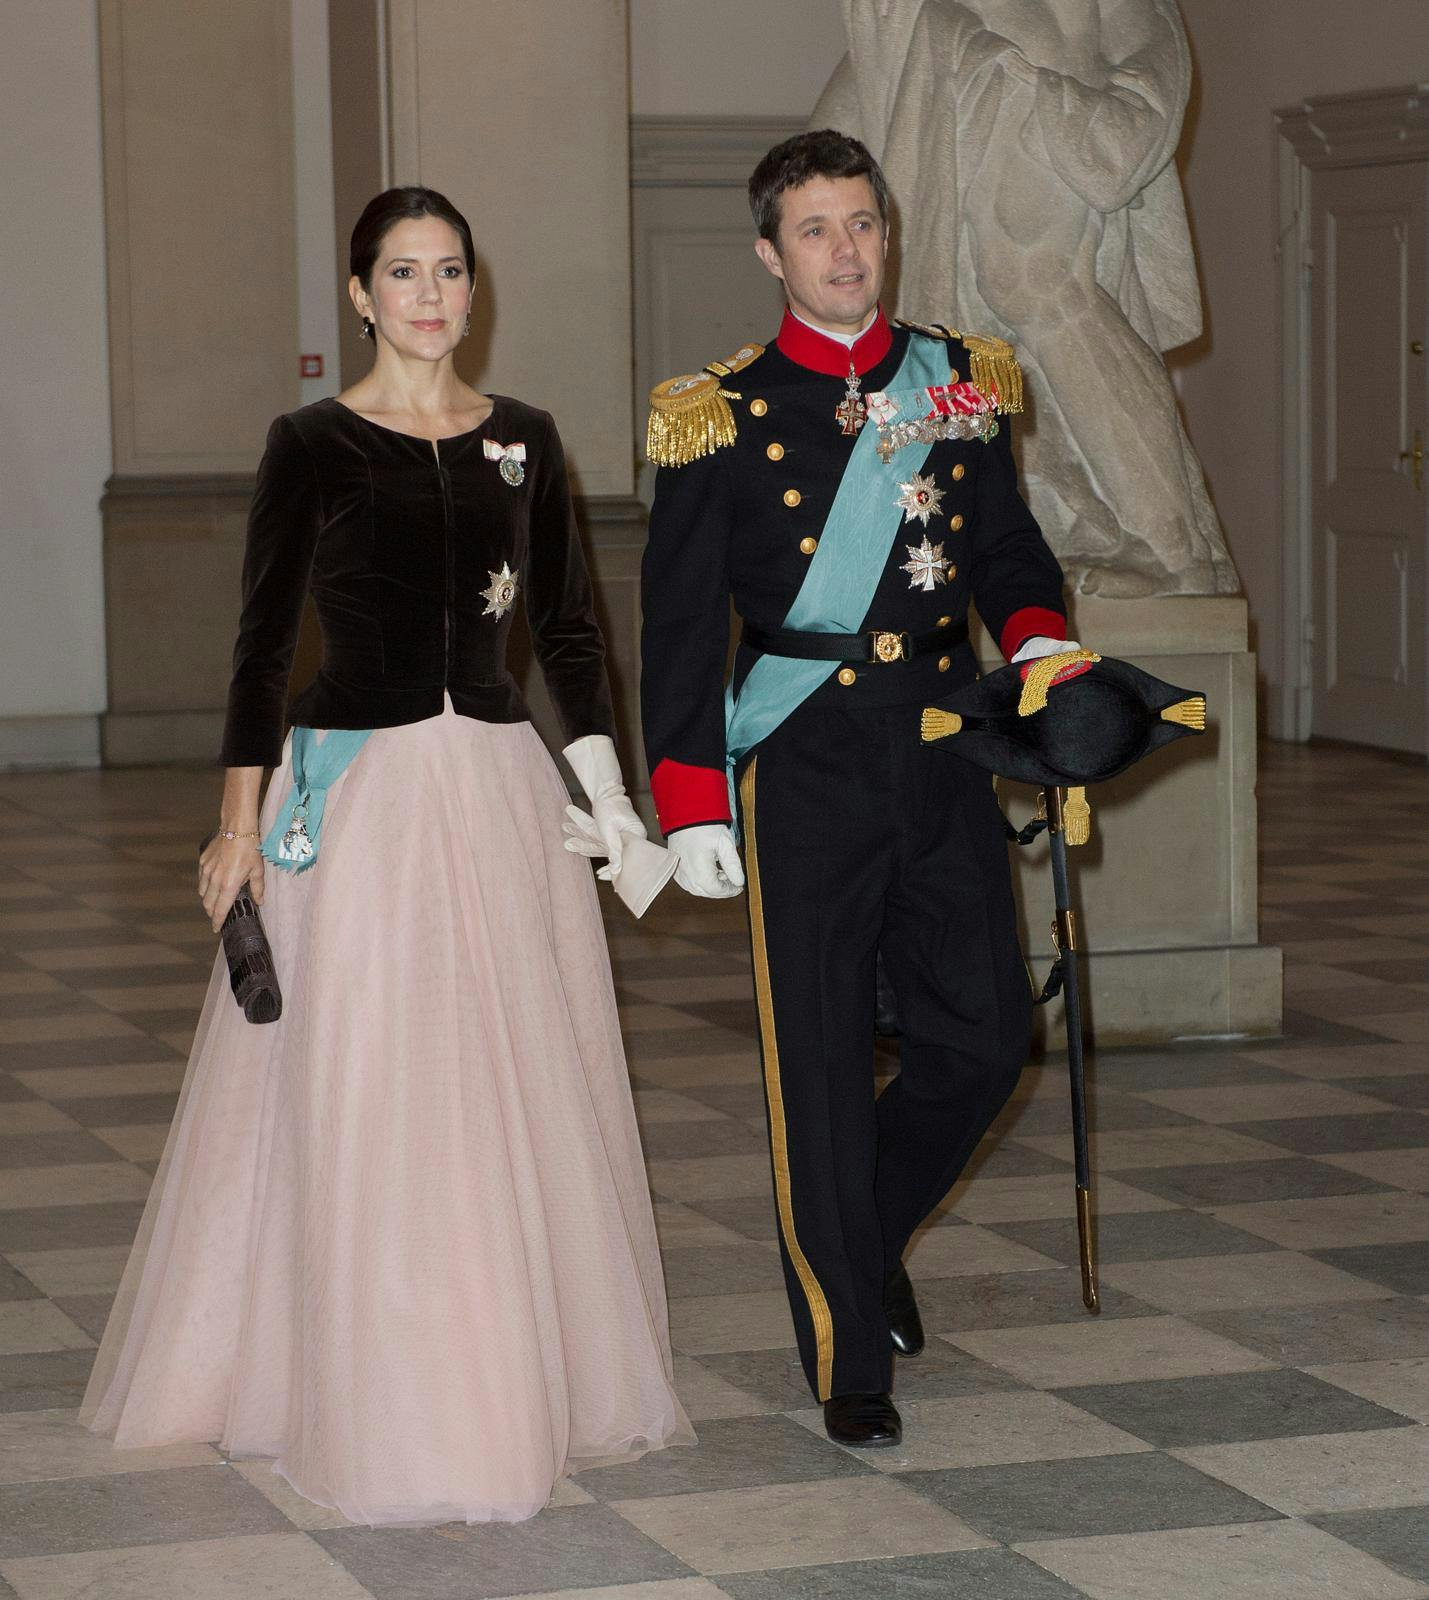 Kronprinsesse Mary og kronprins Frederik til nytårskur i 2013, hvor hun bar samme look som i 2010.